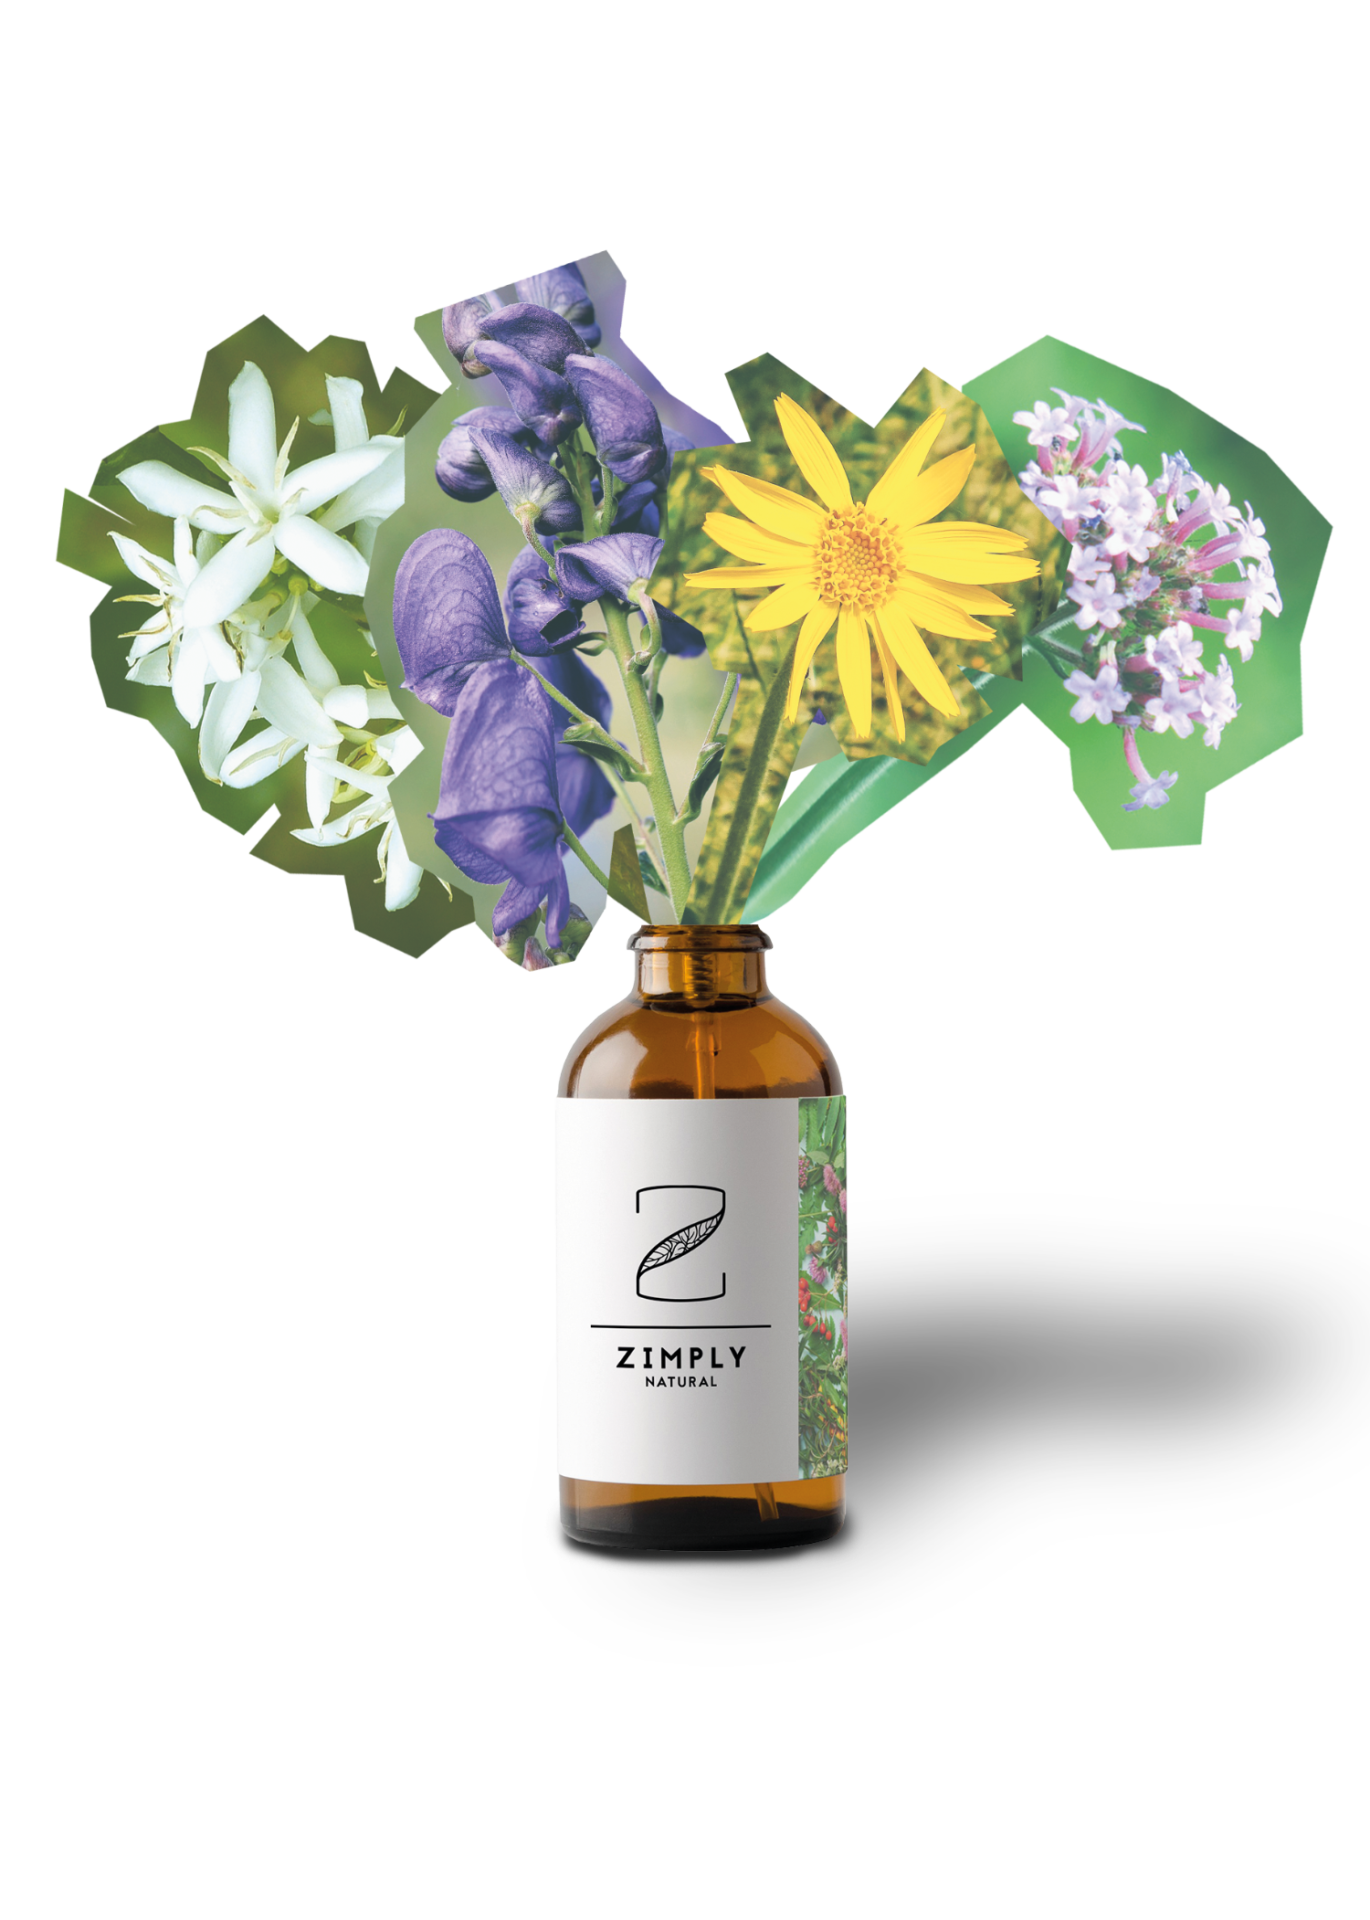 ZIMPLY NATURAL Flasche mit Heilpflanzen Blumenstrauss